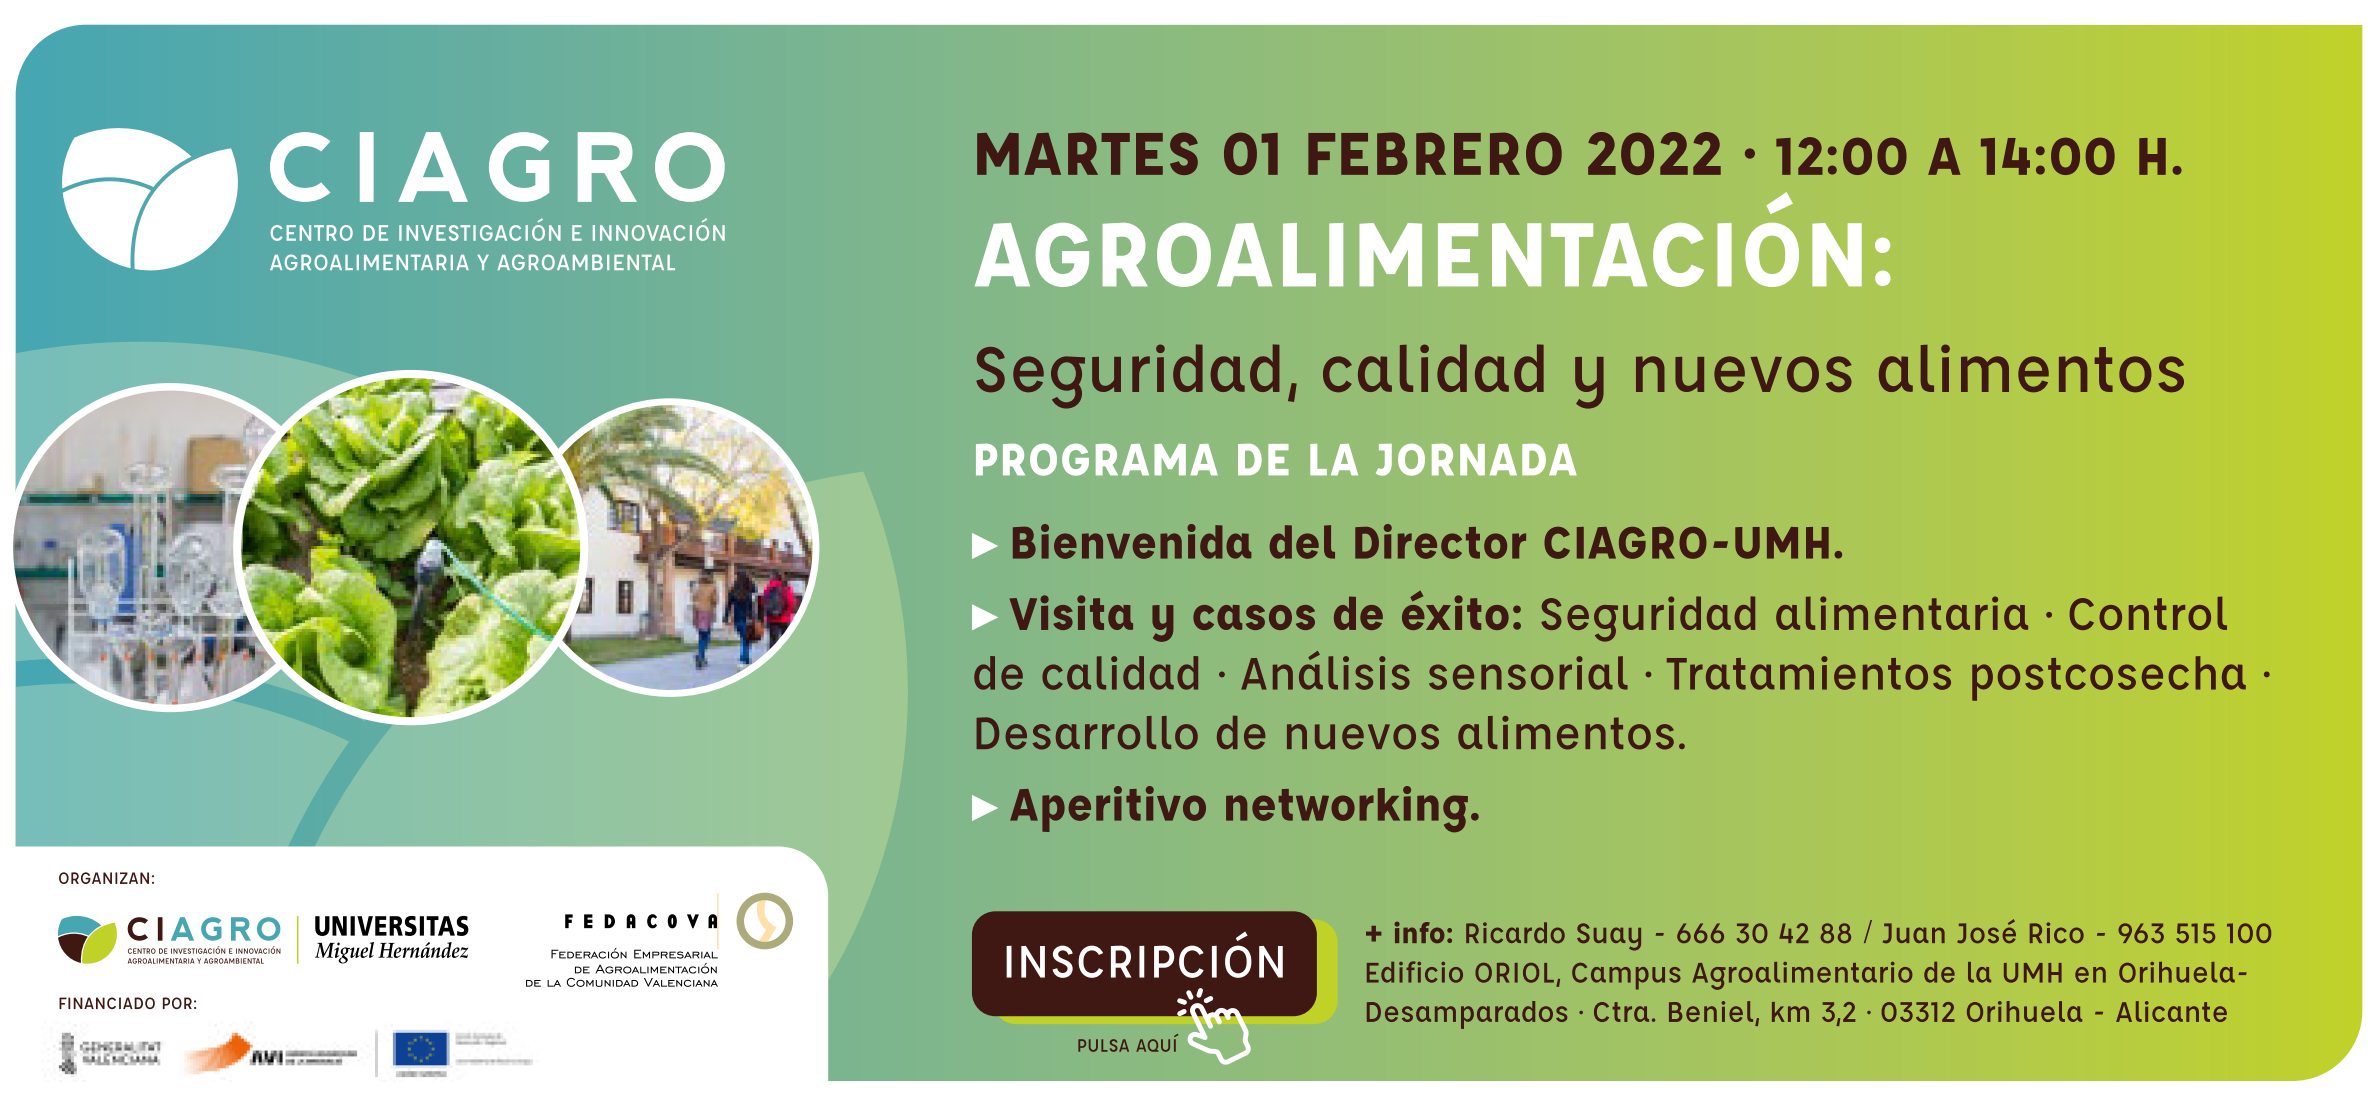 Jornada de Networking CIAGRO-UMH y FEDACOVA | Agroalimentación: seguridad, calidad y nuevos alimentos